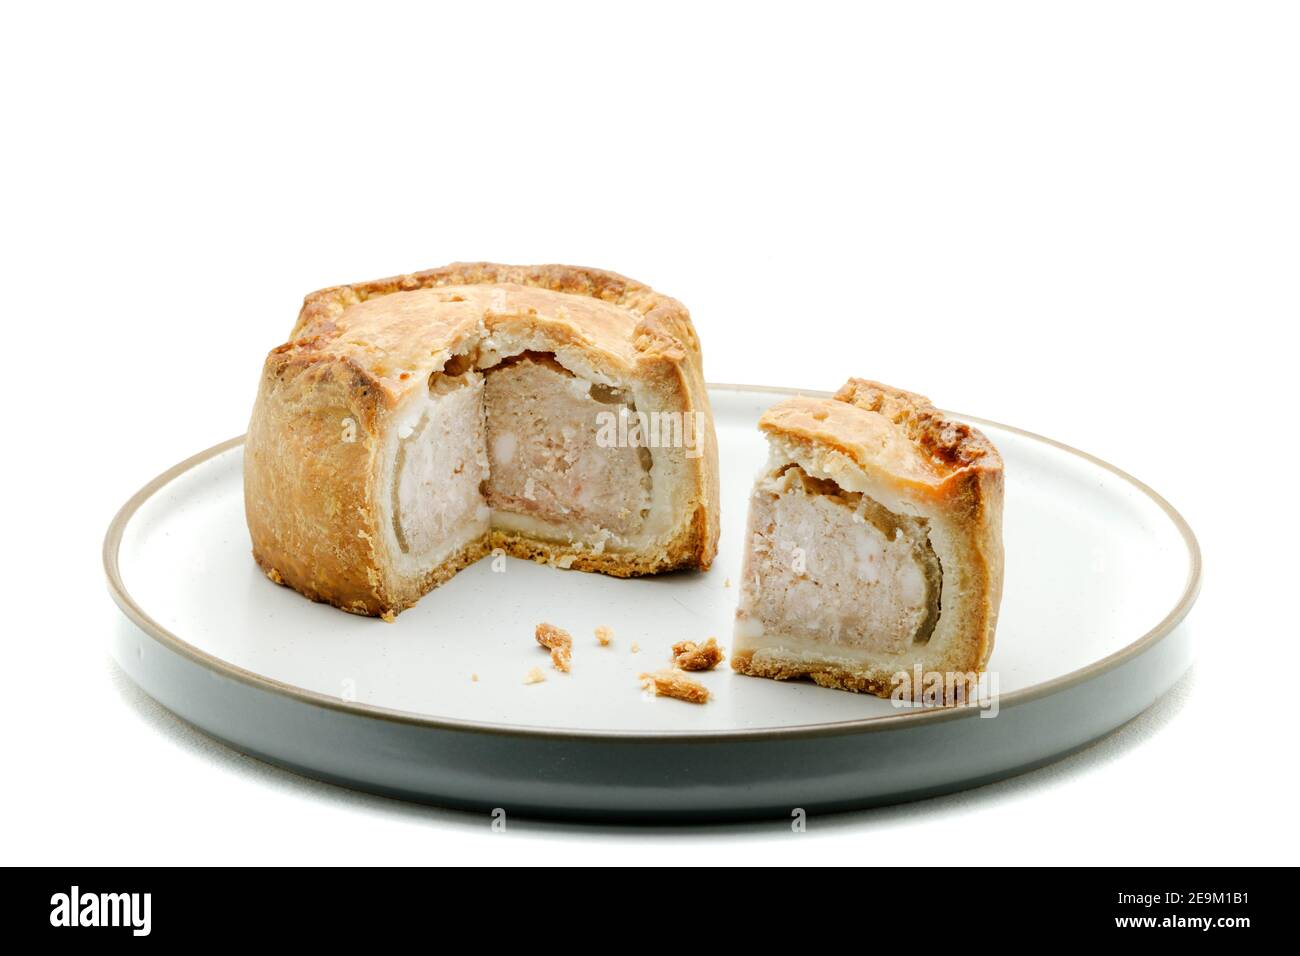 Ein traditioneller, handgekräuselter Melton Mowbray Pork Pie. Ein traditionelles englisches Schweinefleisch mit einer gehackten Schweinefleischfüllung, gelierte Schweinefond in einem Krustengebäck Stockfoto